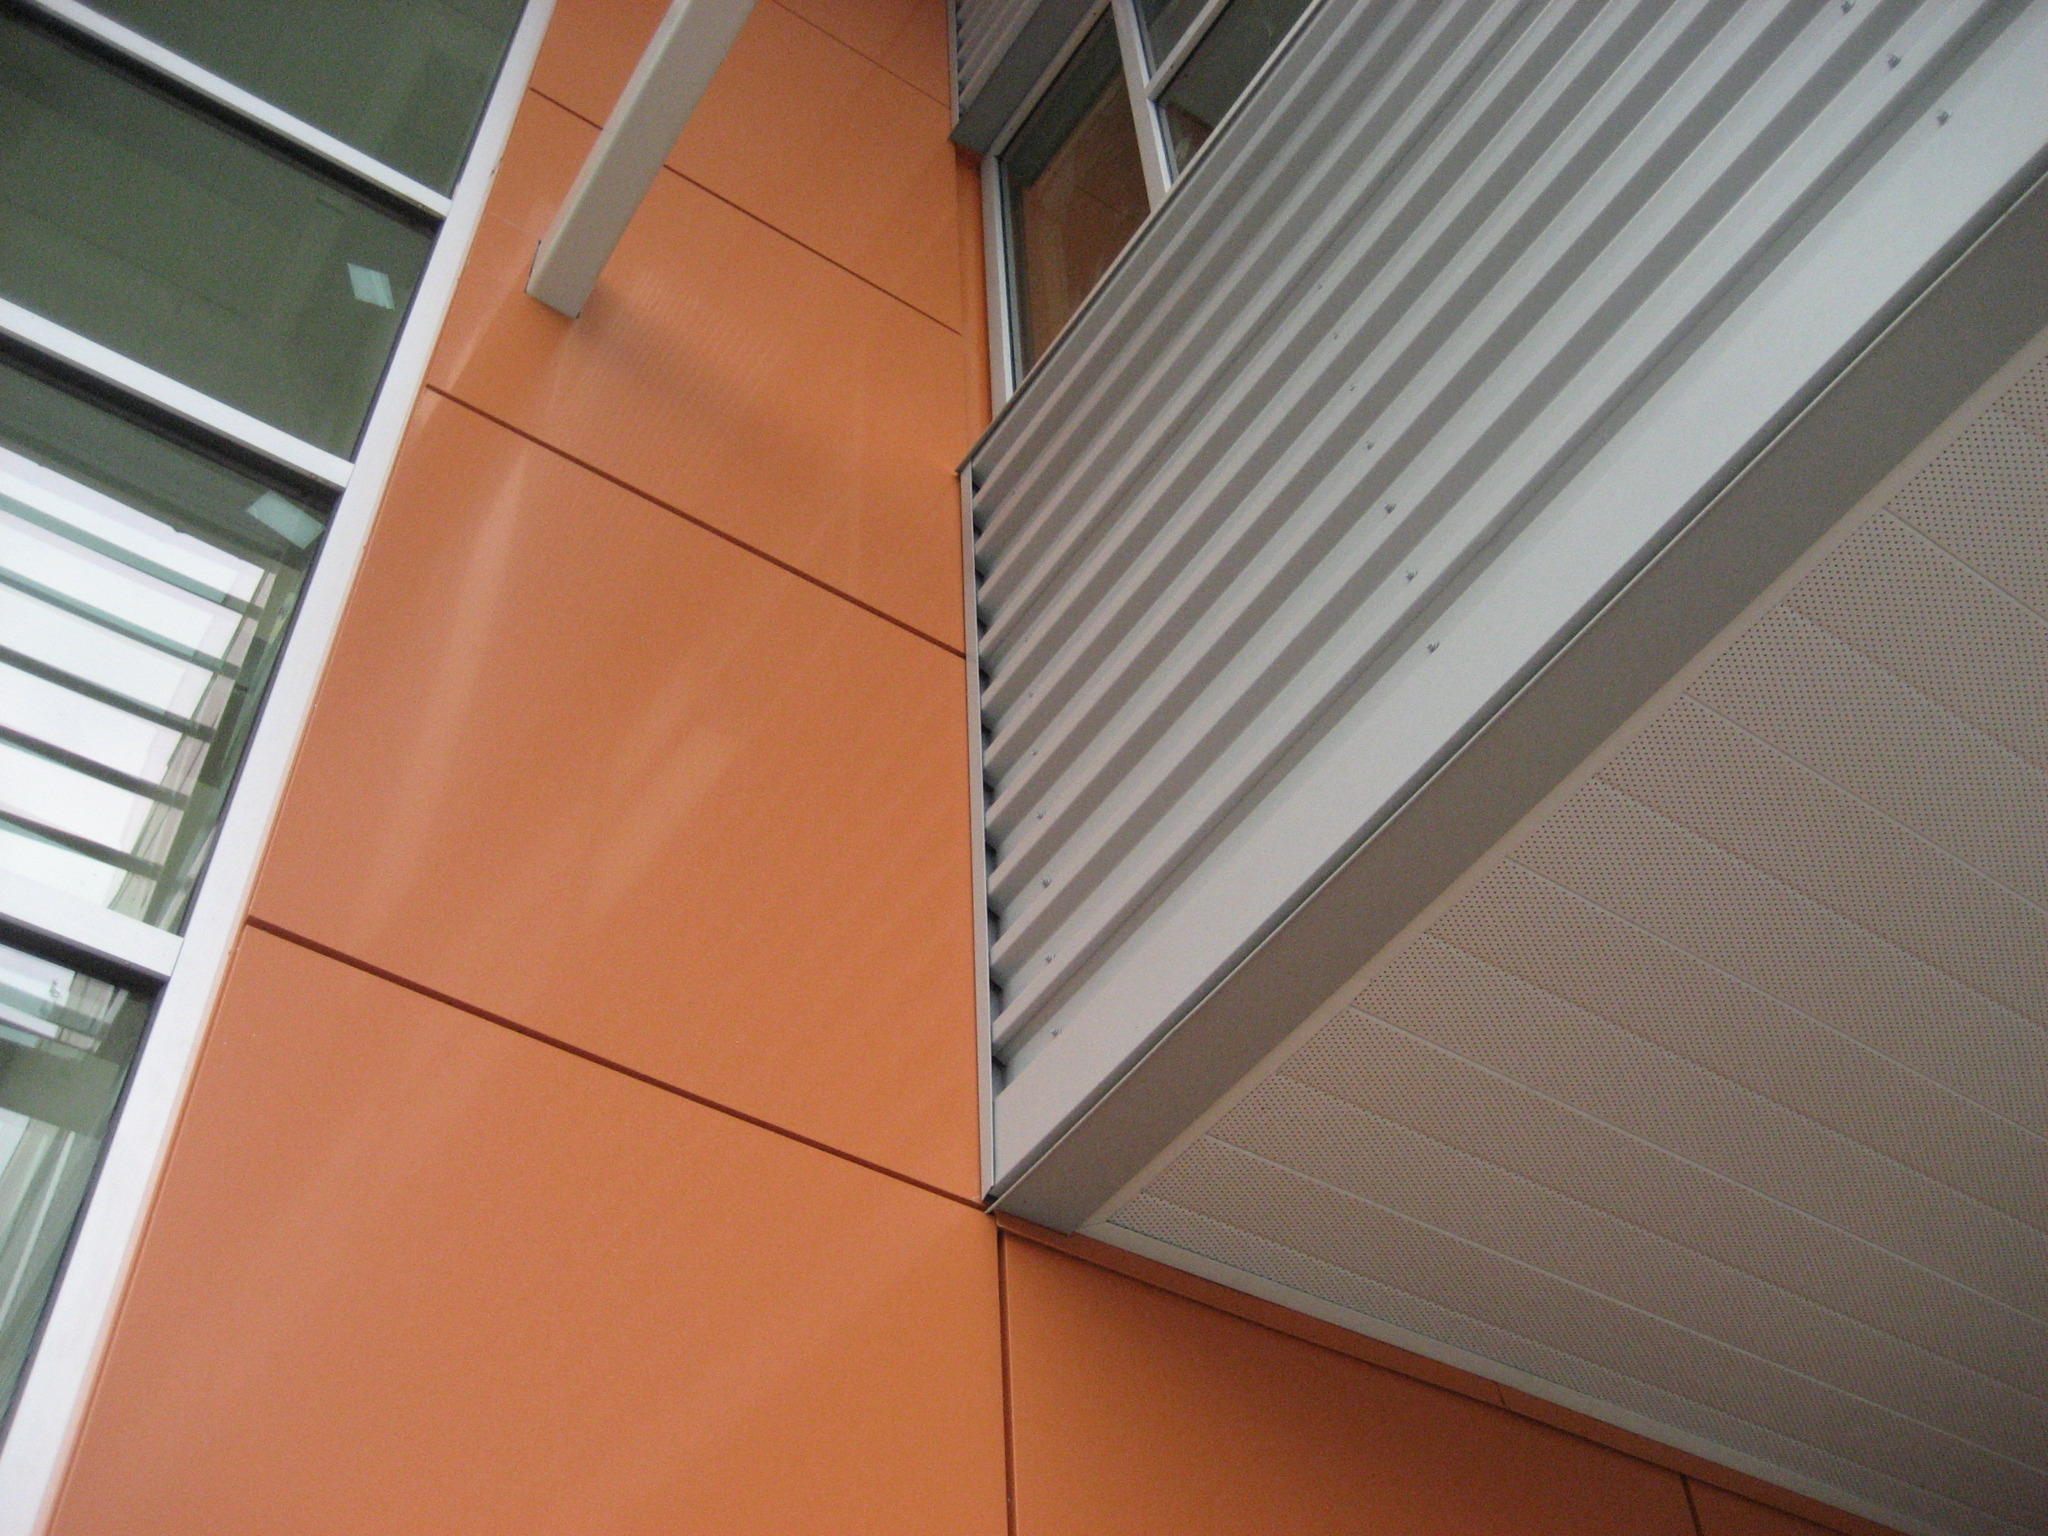 ACM Panels installed in Kelowna Building